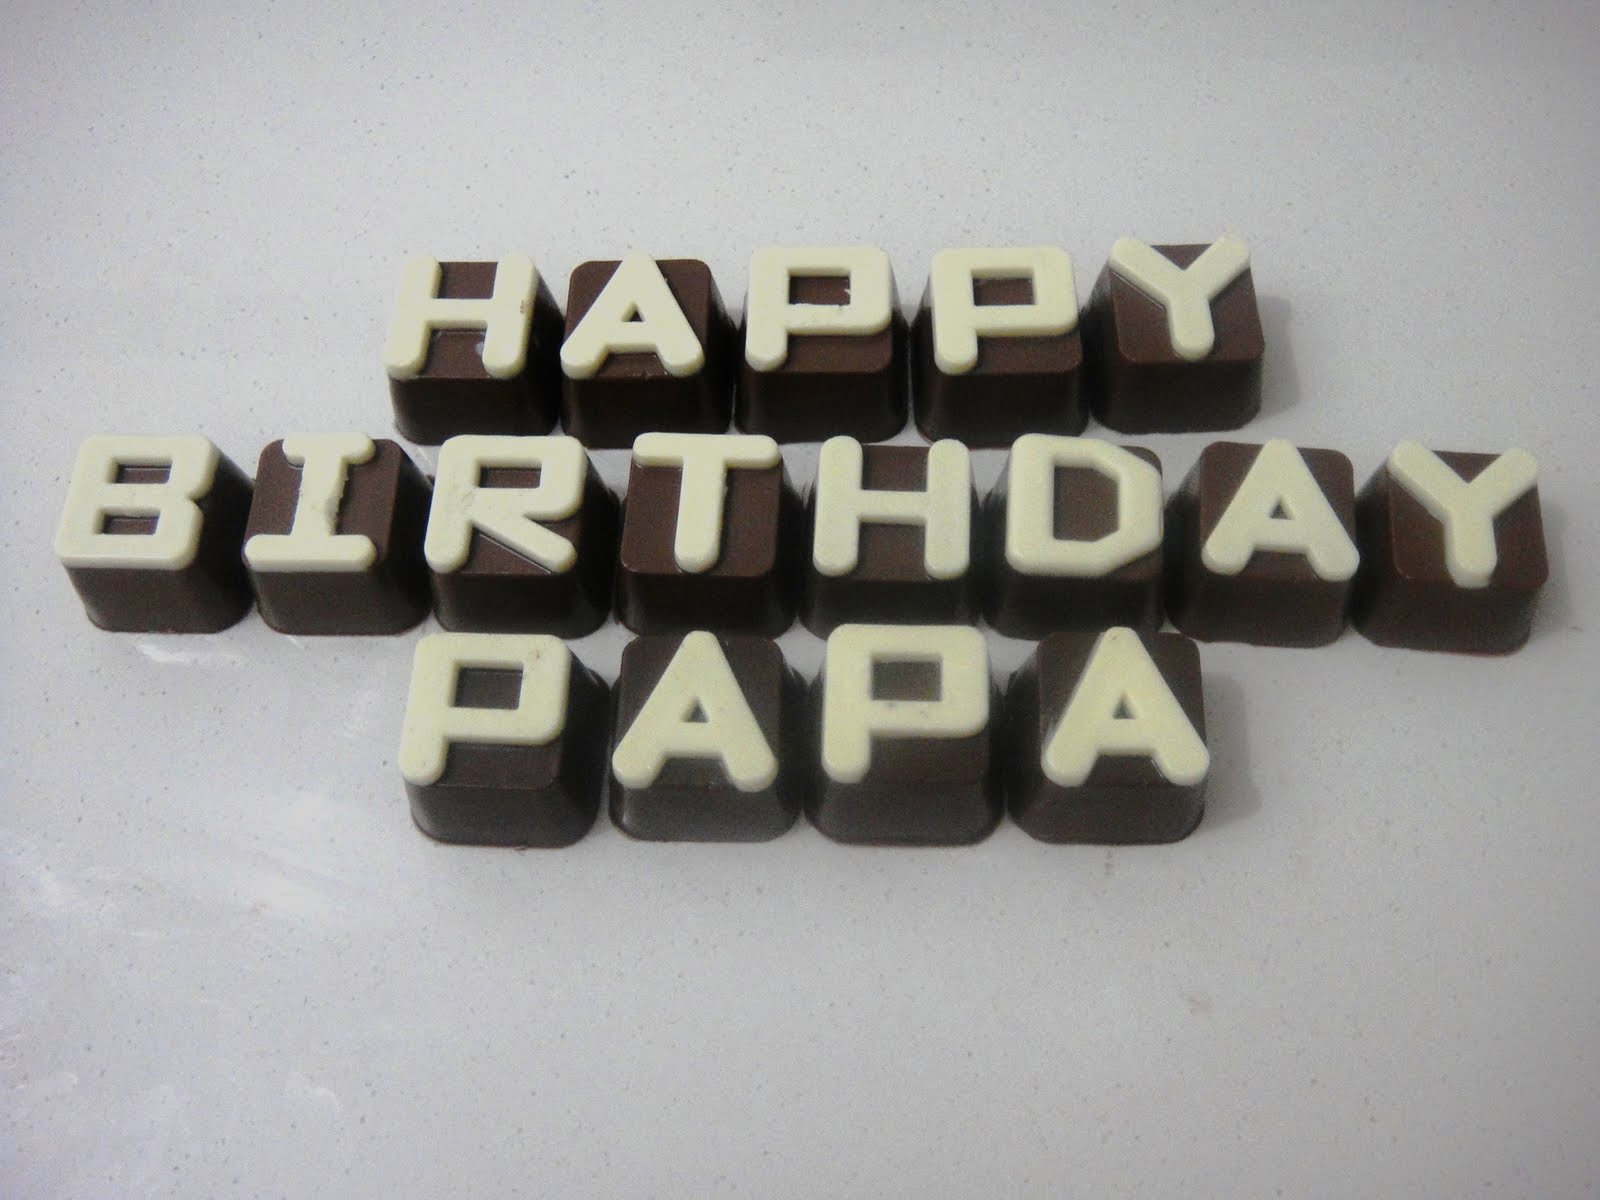 papa birthday